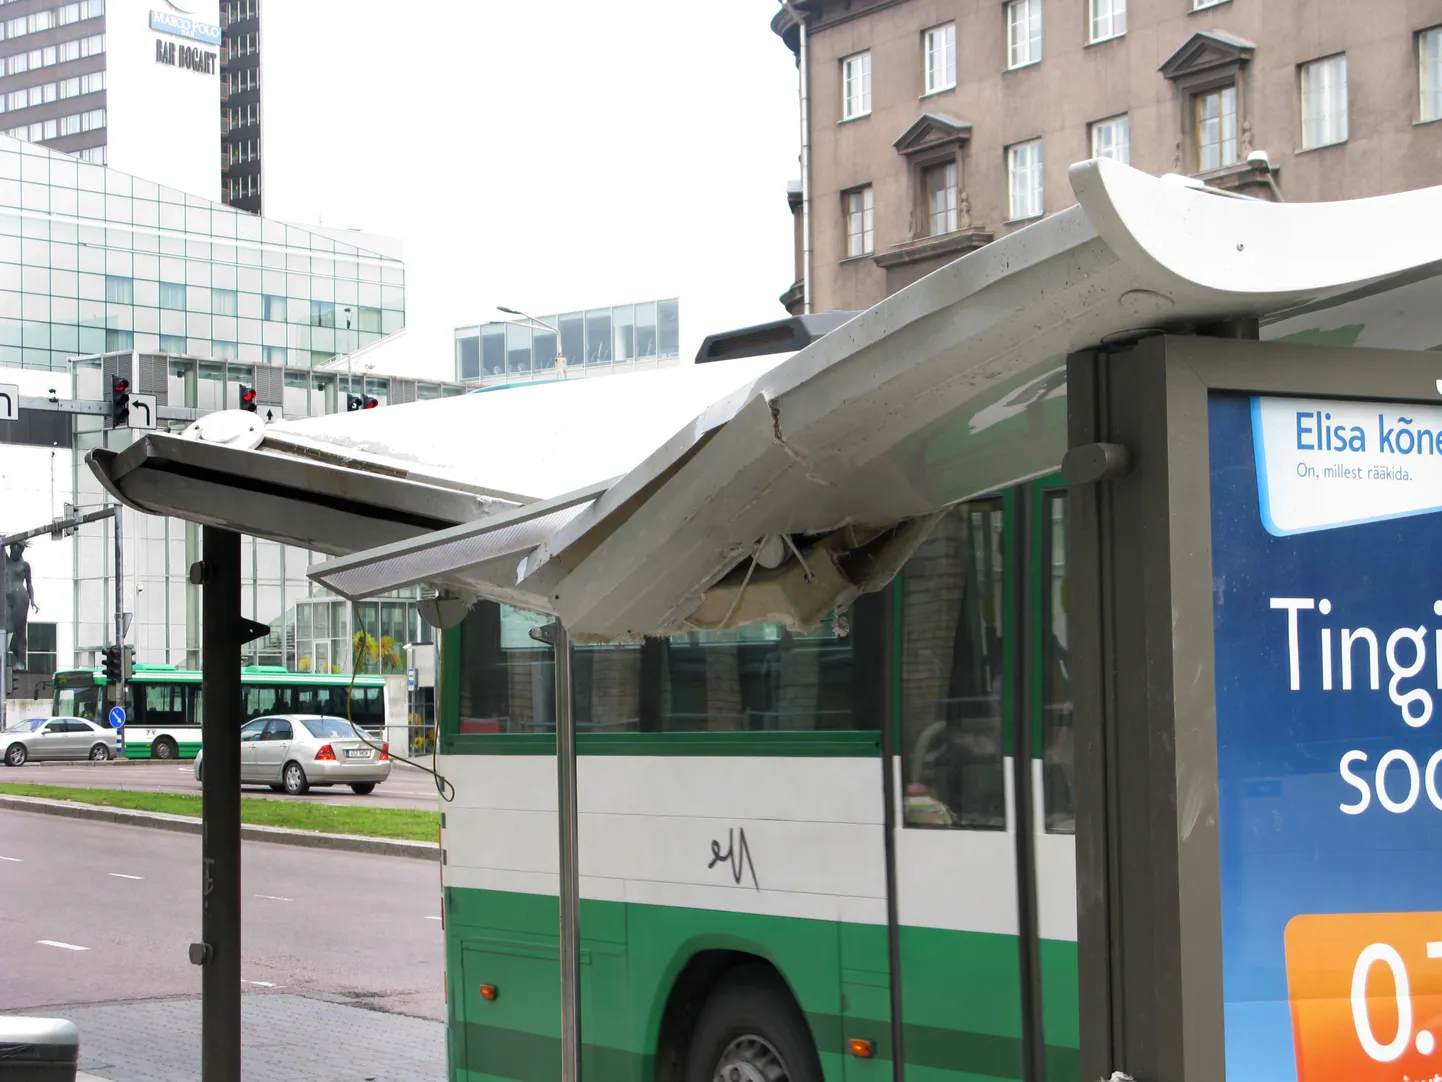 Неделю назад упавший обломок сносимого здания повредил автобусную остановку.